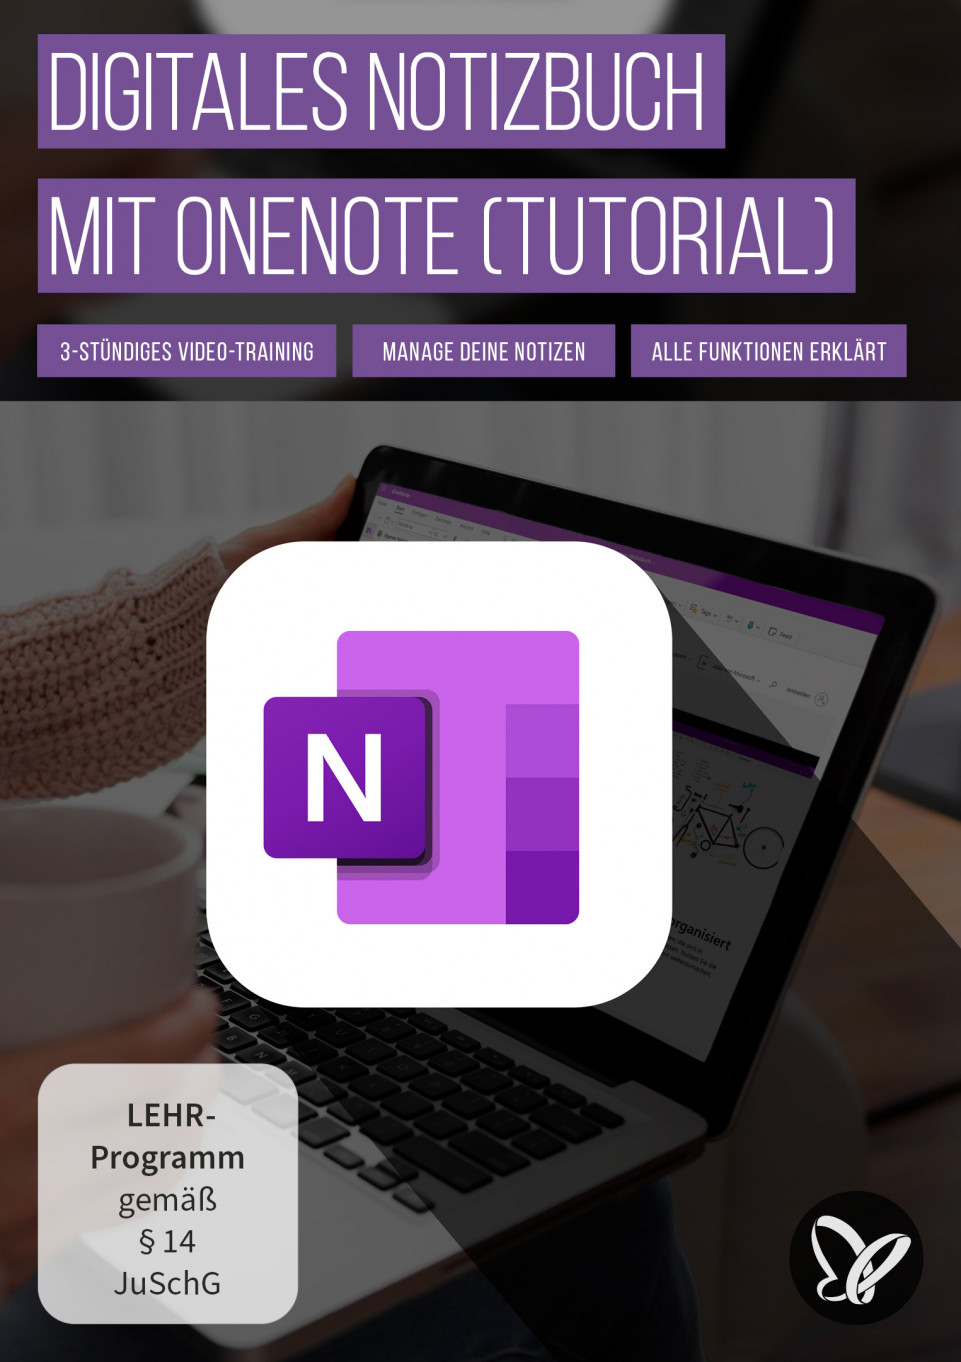 Microsoft OneNote (Tutorial): So behältst du mit dem digitalen Notizbuch alles im Blick